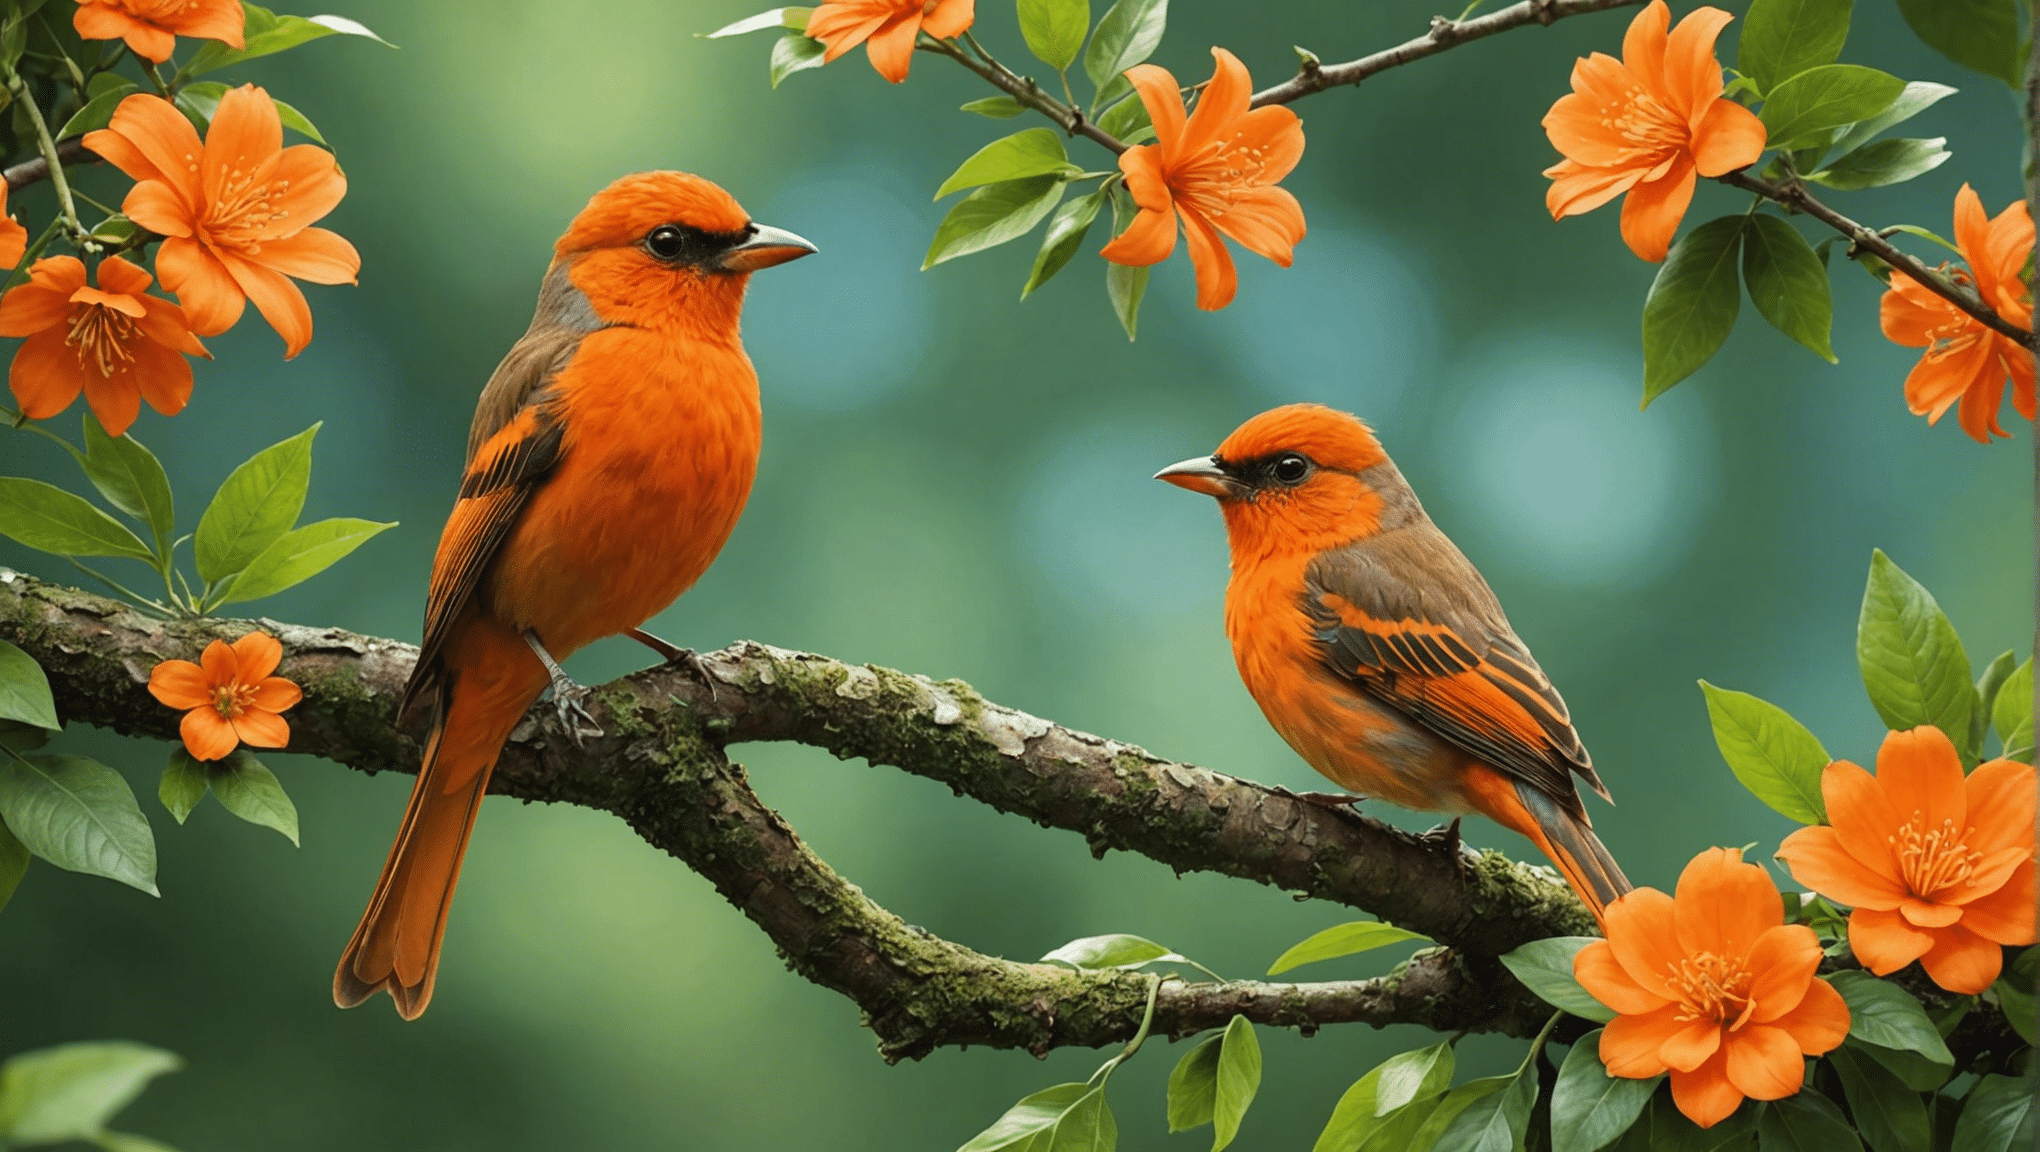 scopri la verità sugli uccelli arancioni: sono reali o solo una leggenda? ottieni i fatti e scopri la realtà dietro il mistero dell'uccello arancione.